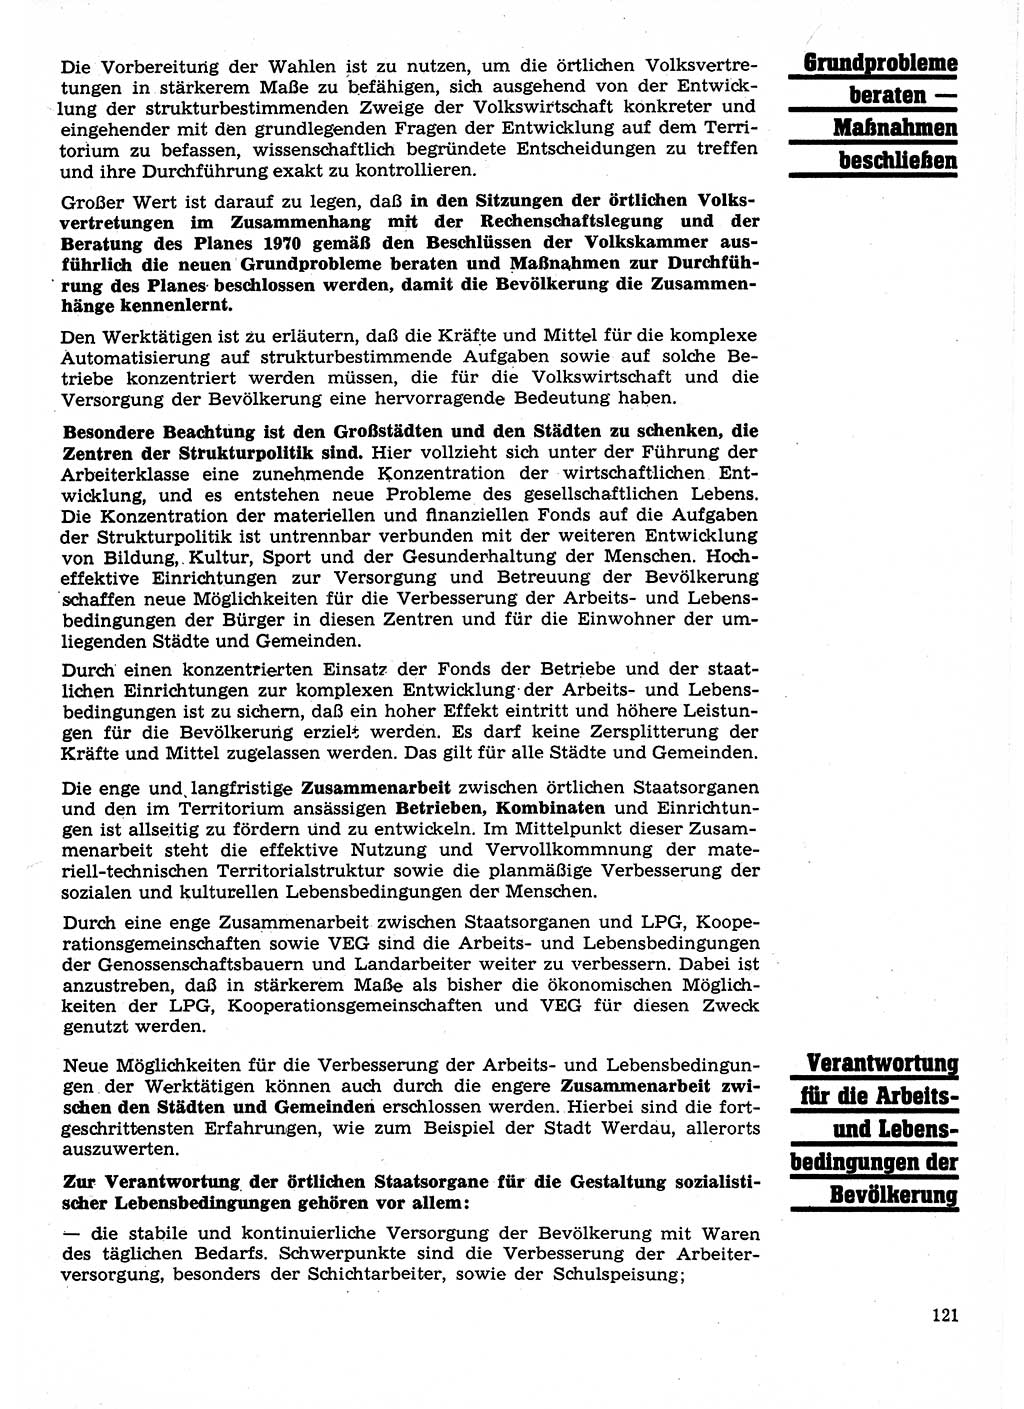 Neuer Weg (NW), Organ des Zentralkomitees (ZK) der SED (Sozialistische Einheitspartei Deutschlands) für Fragen des Parteilebens, 25. Jahrgang [Deutsche Demokratische Republik (DDR)] 1970, Seite 121 (NW ZK SED DDR 1970, S. 121)